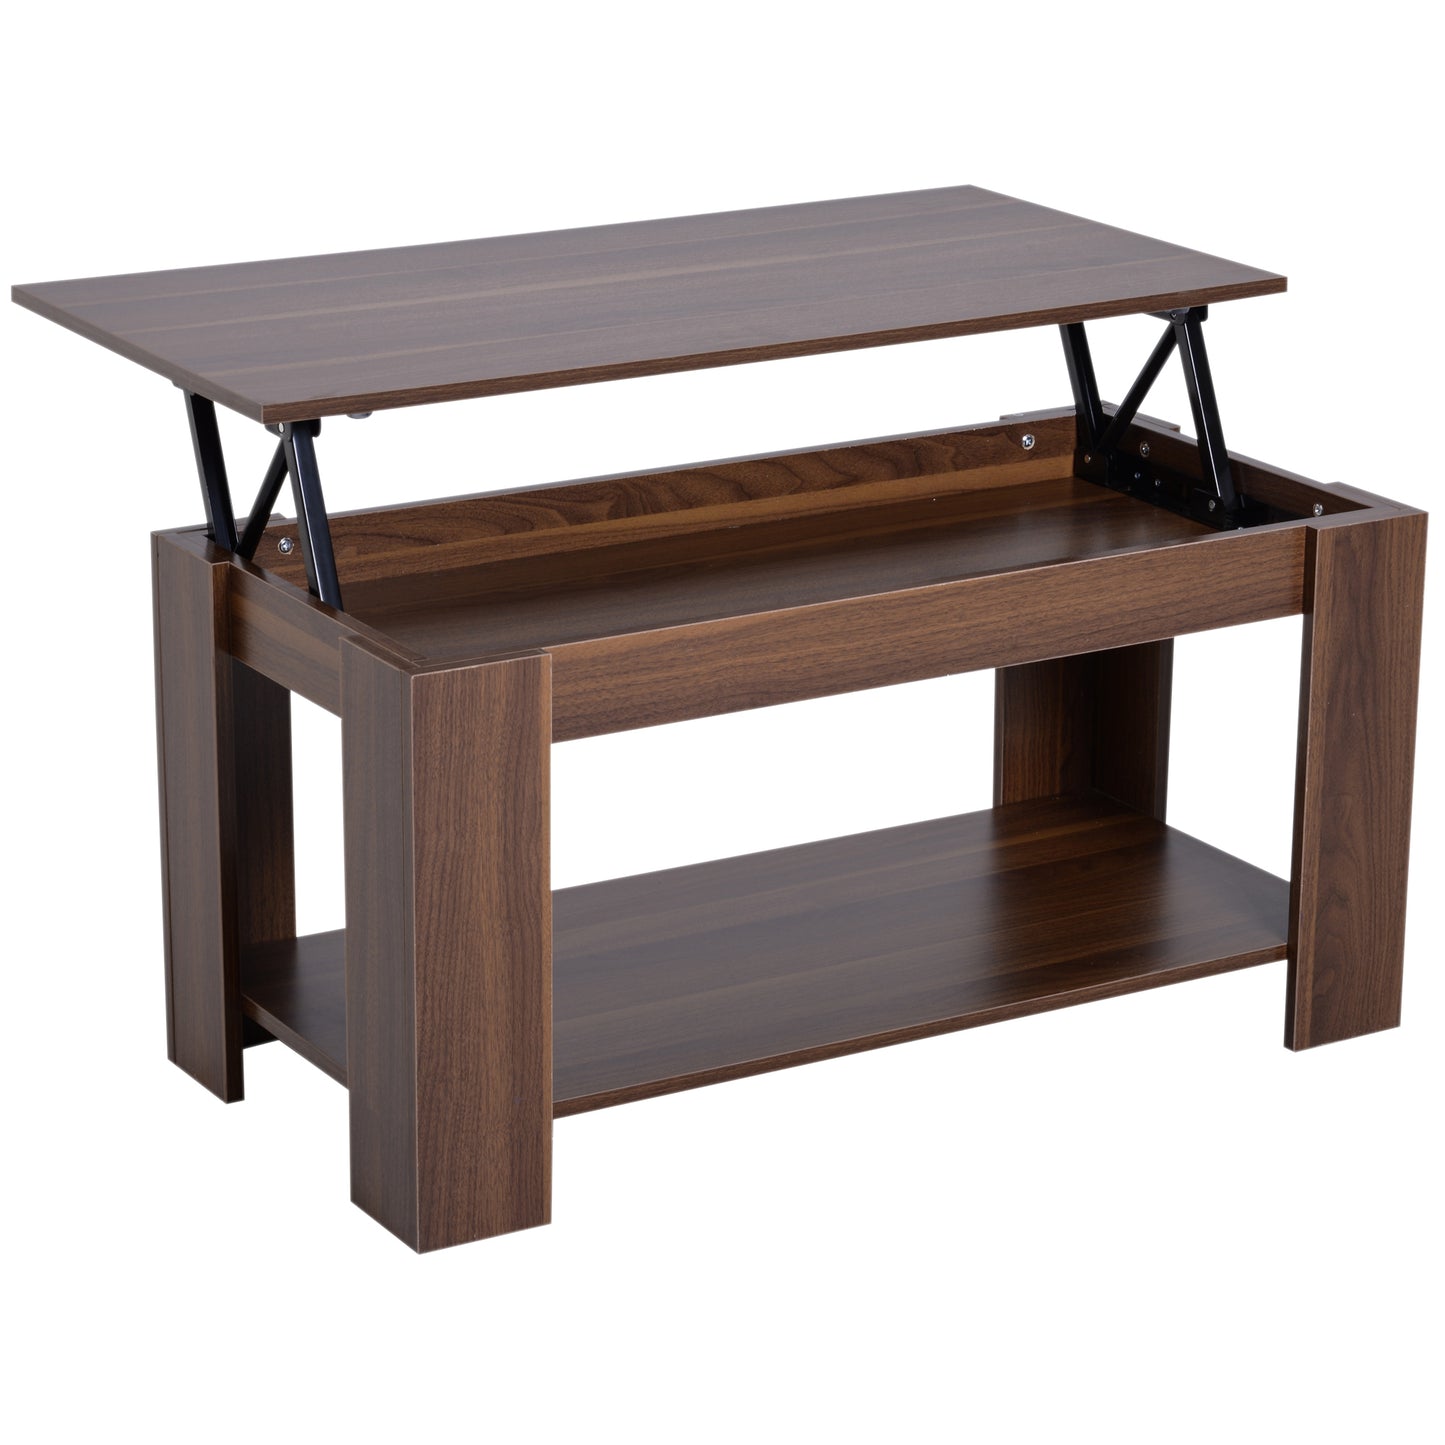 HOMCOM Modern Lift Up Top Coffee Table, 100W x 50D x 50/63Hcm cm-Natural Wood Grain Colour